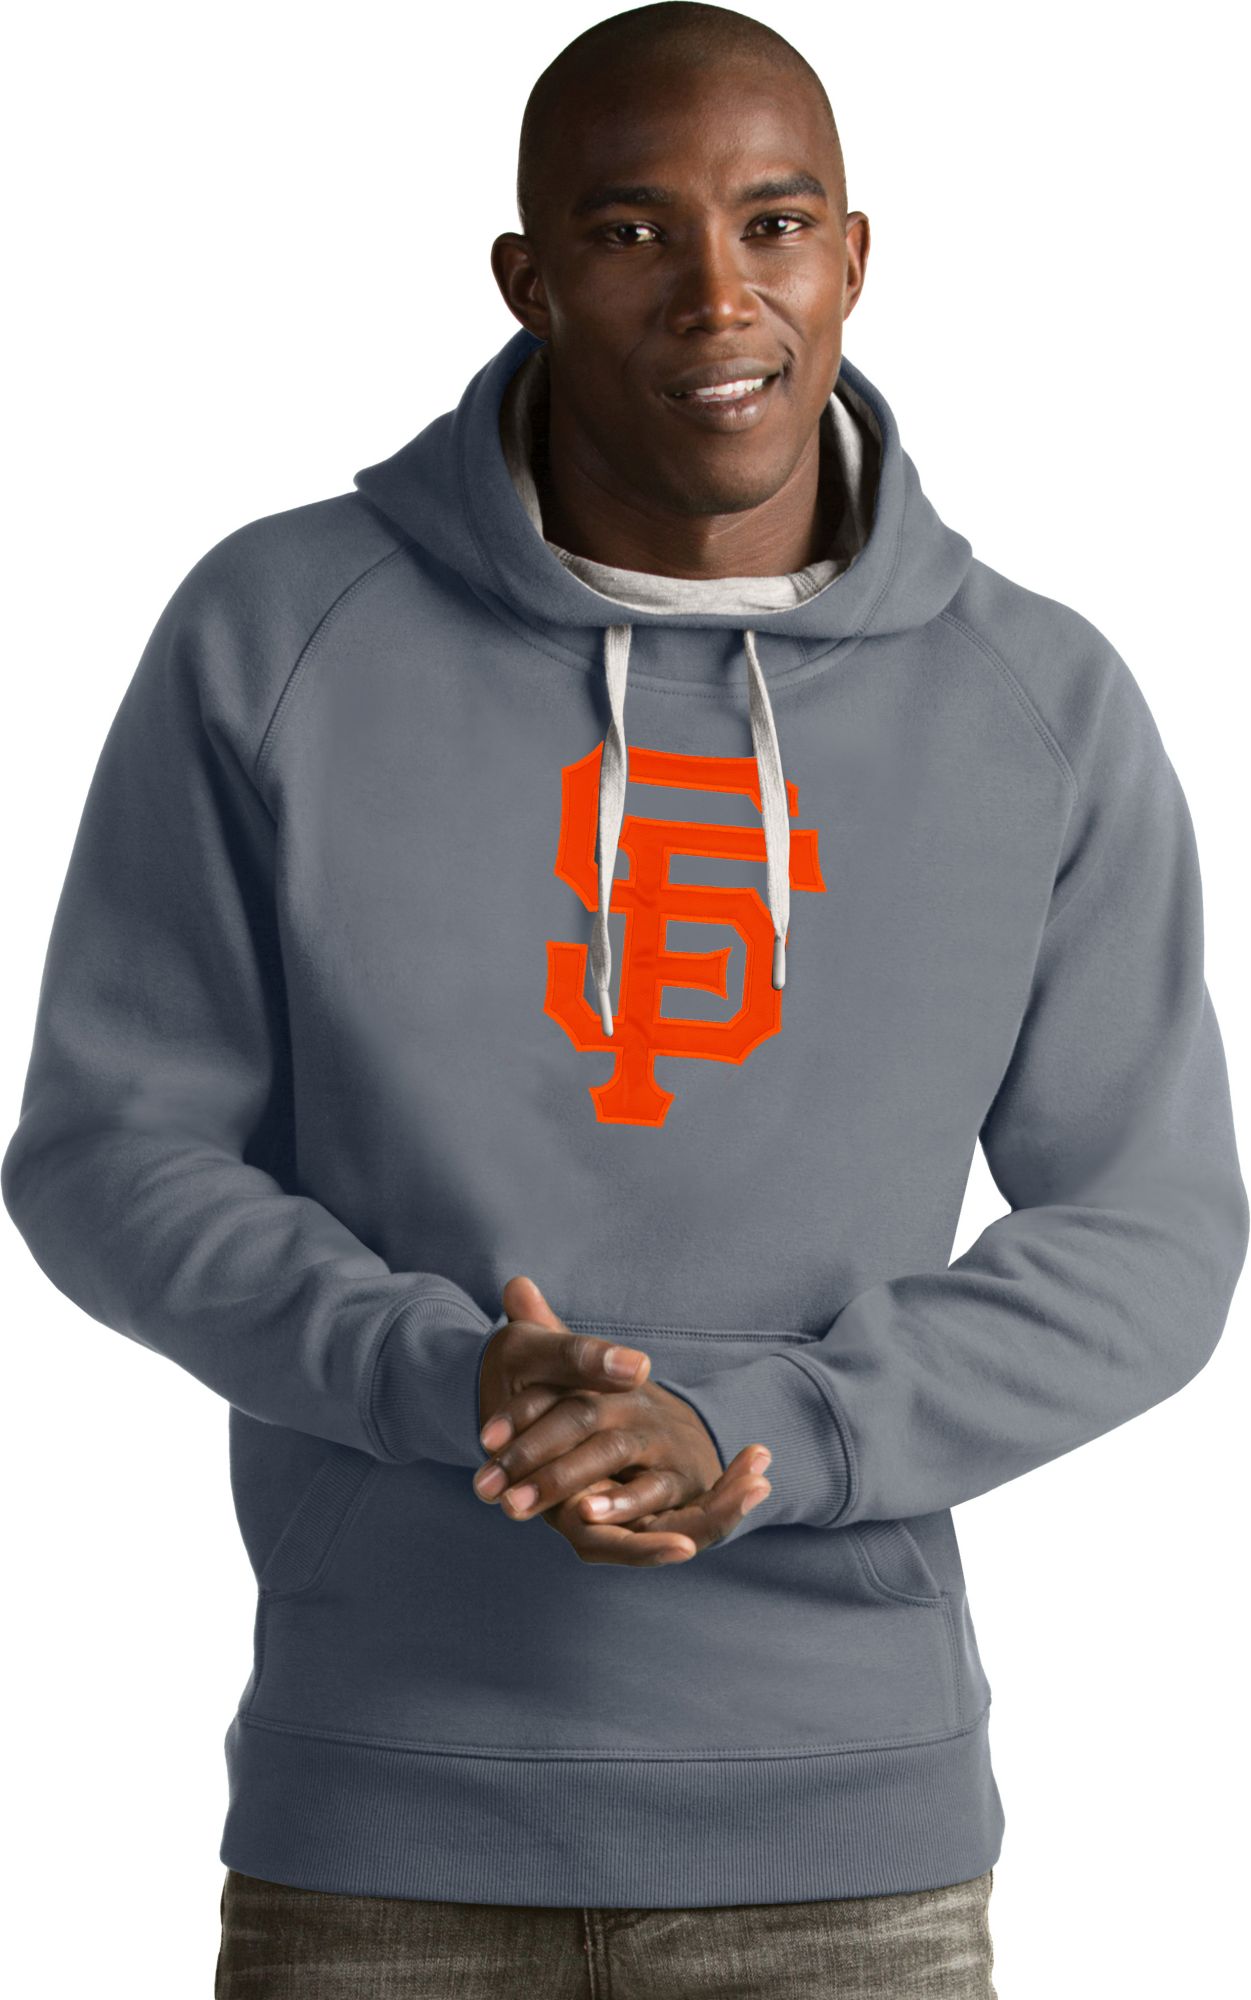 san francisco giants hoodie